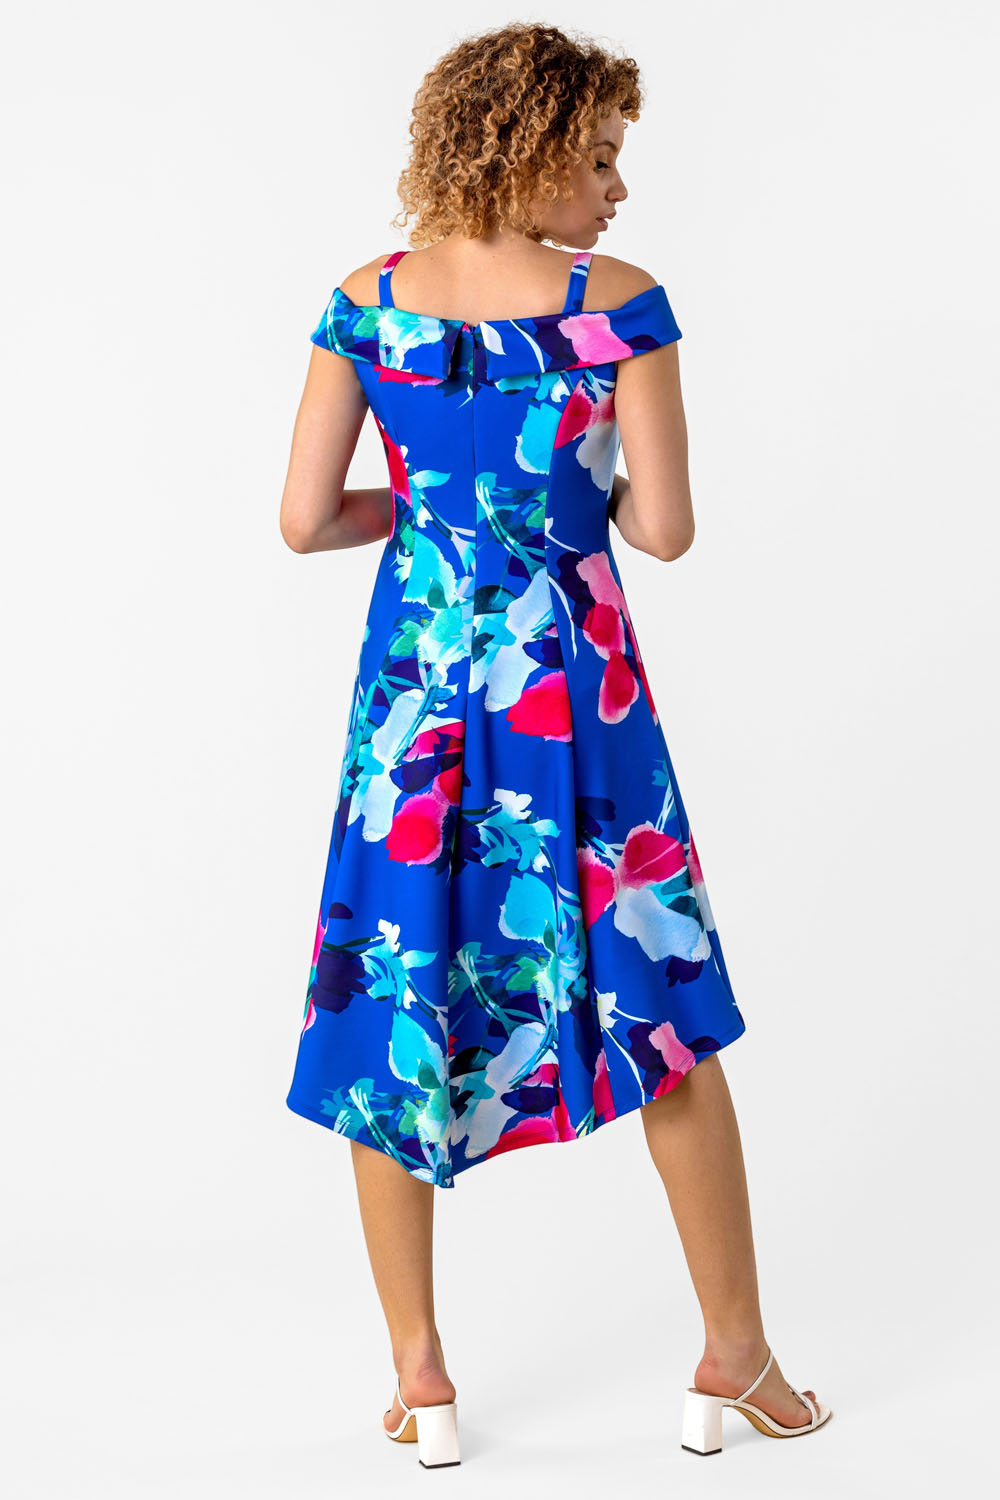 Royal Blue Cold Shoulder Floral Print Dress, Image 2 of 3